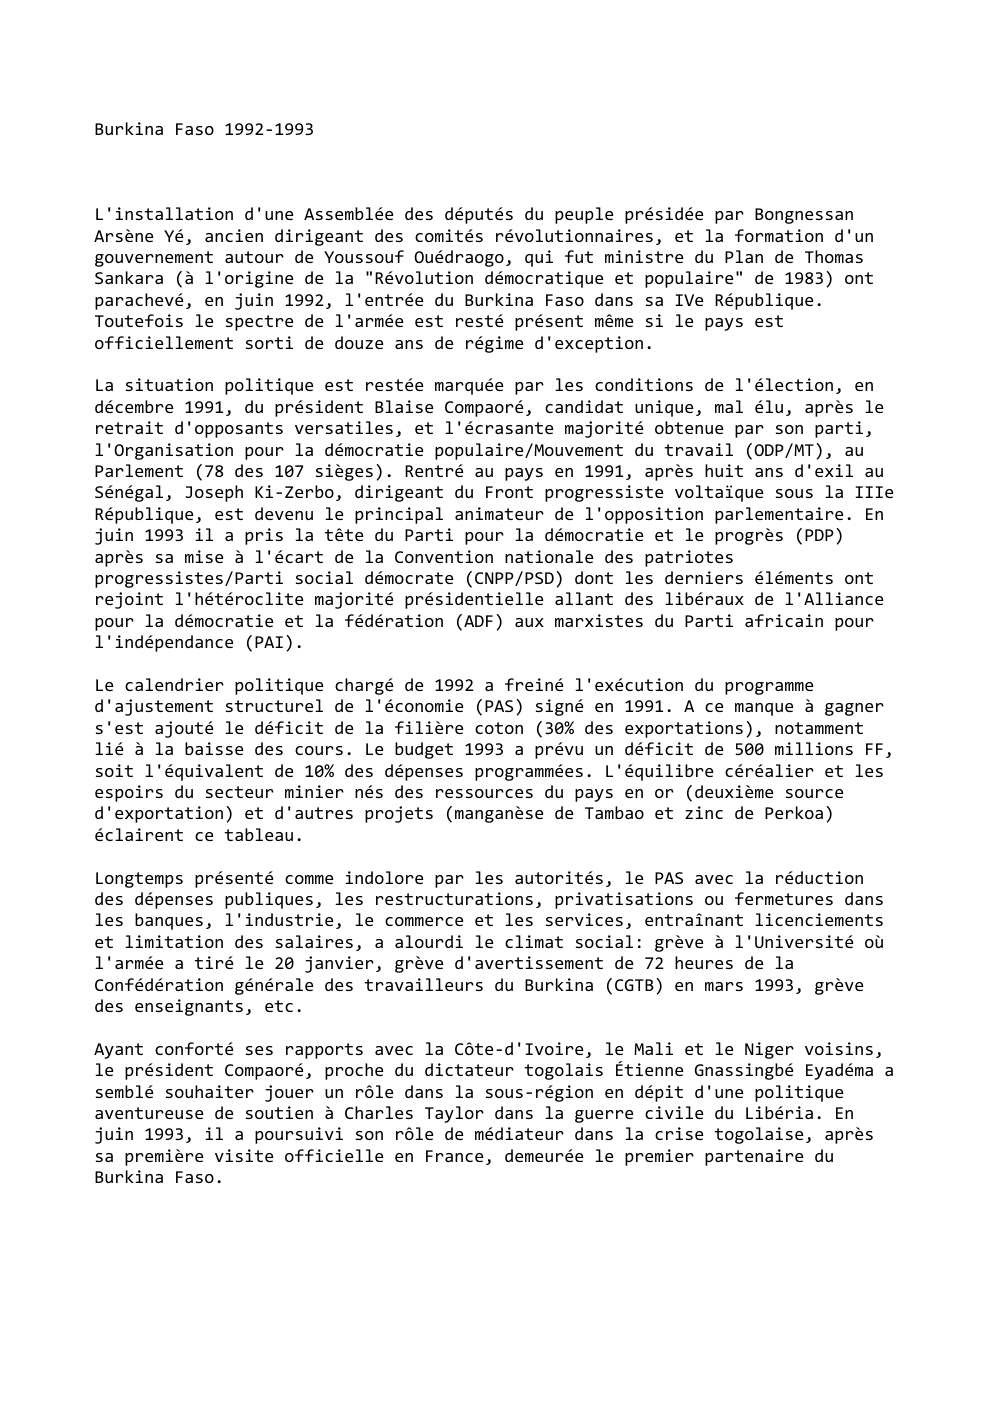 Prévisualisation du document Burkina Faso 1992-1993

L'installation d'une Assemblée des députés du peuple présidée par Bongnessan
Arsène Yé, ancien dirigeant des comités révolutionnaires,...